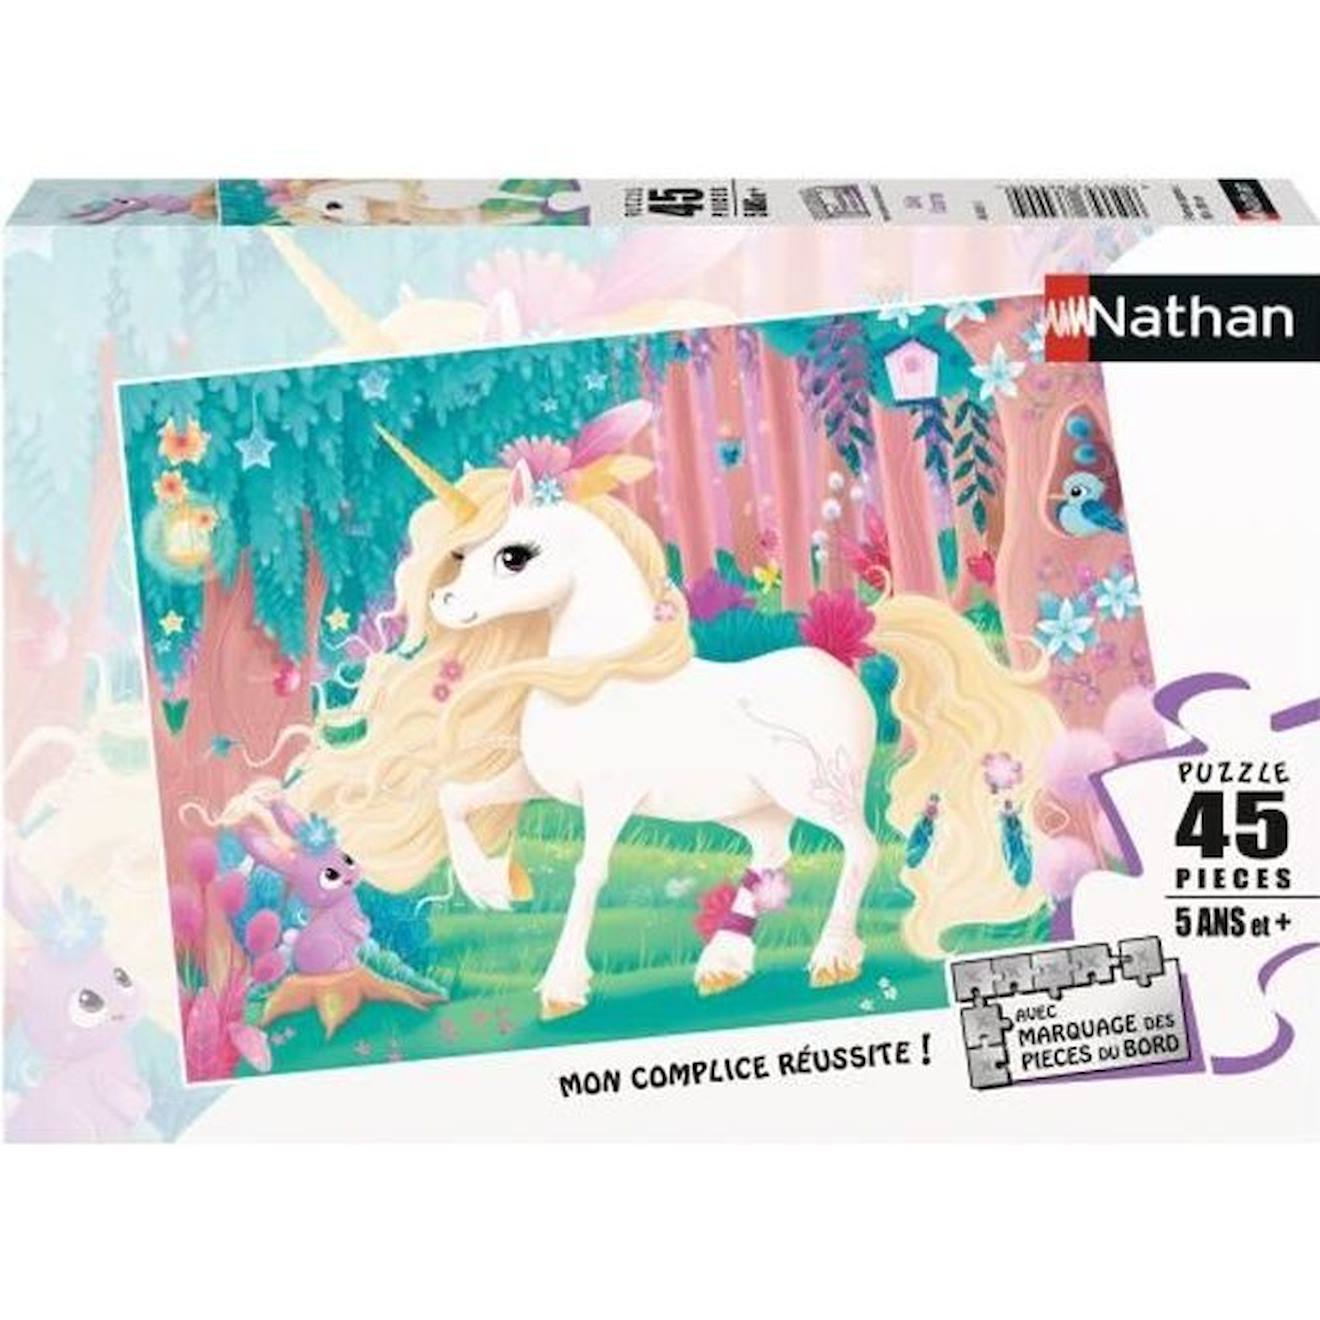 Puzzle Enfant 45 Pièces Jolie Licorne Nathan - Poster Inclus - Thème Fantastique - Mixte - A Partir 